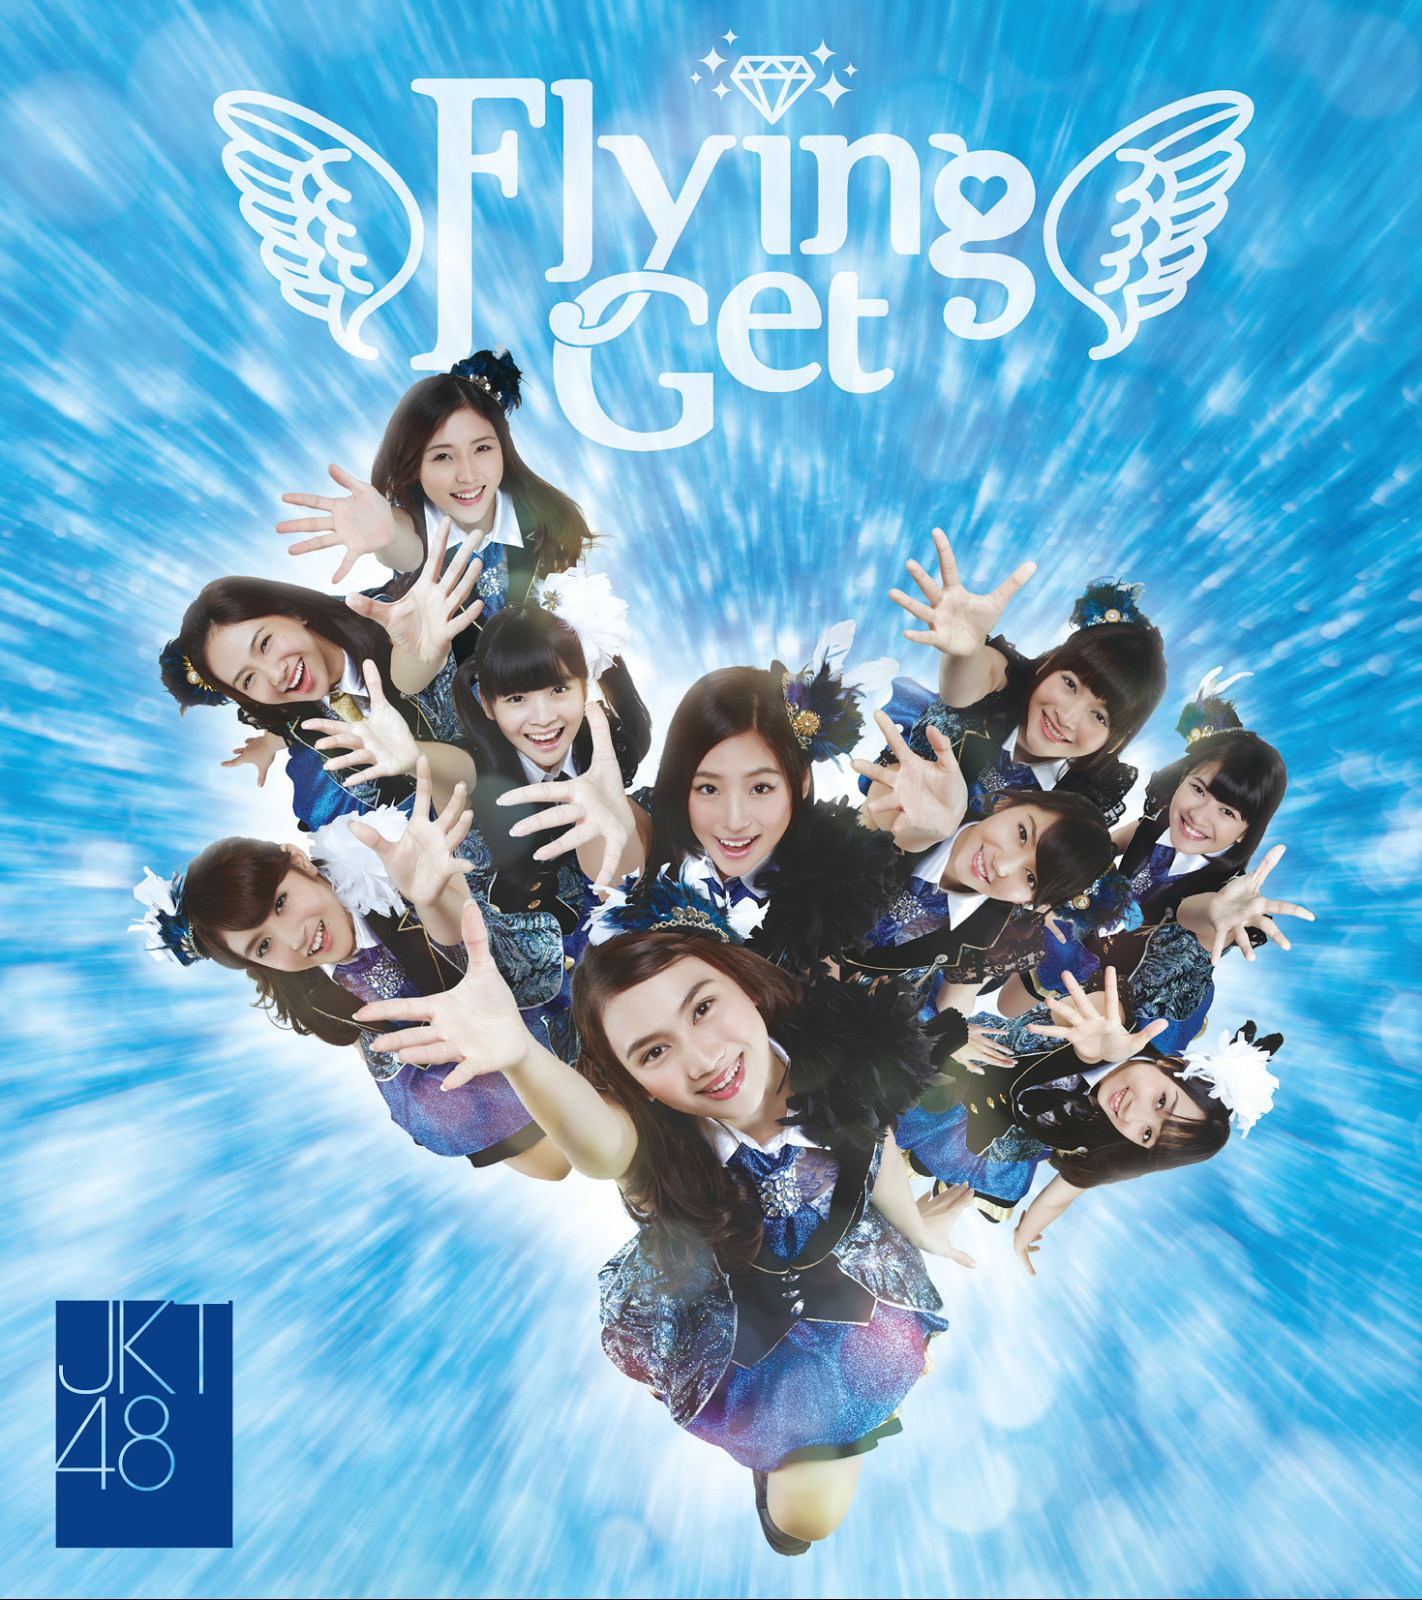 Lirik dan Chord Gitar JKT48 Flying Get